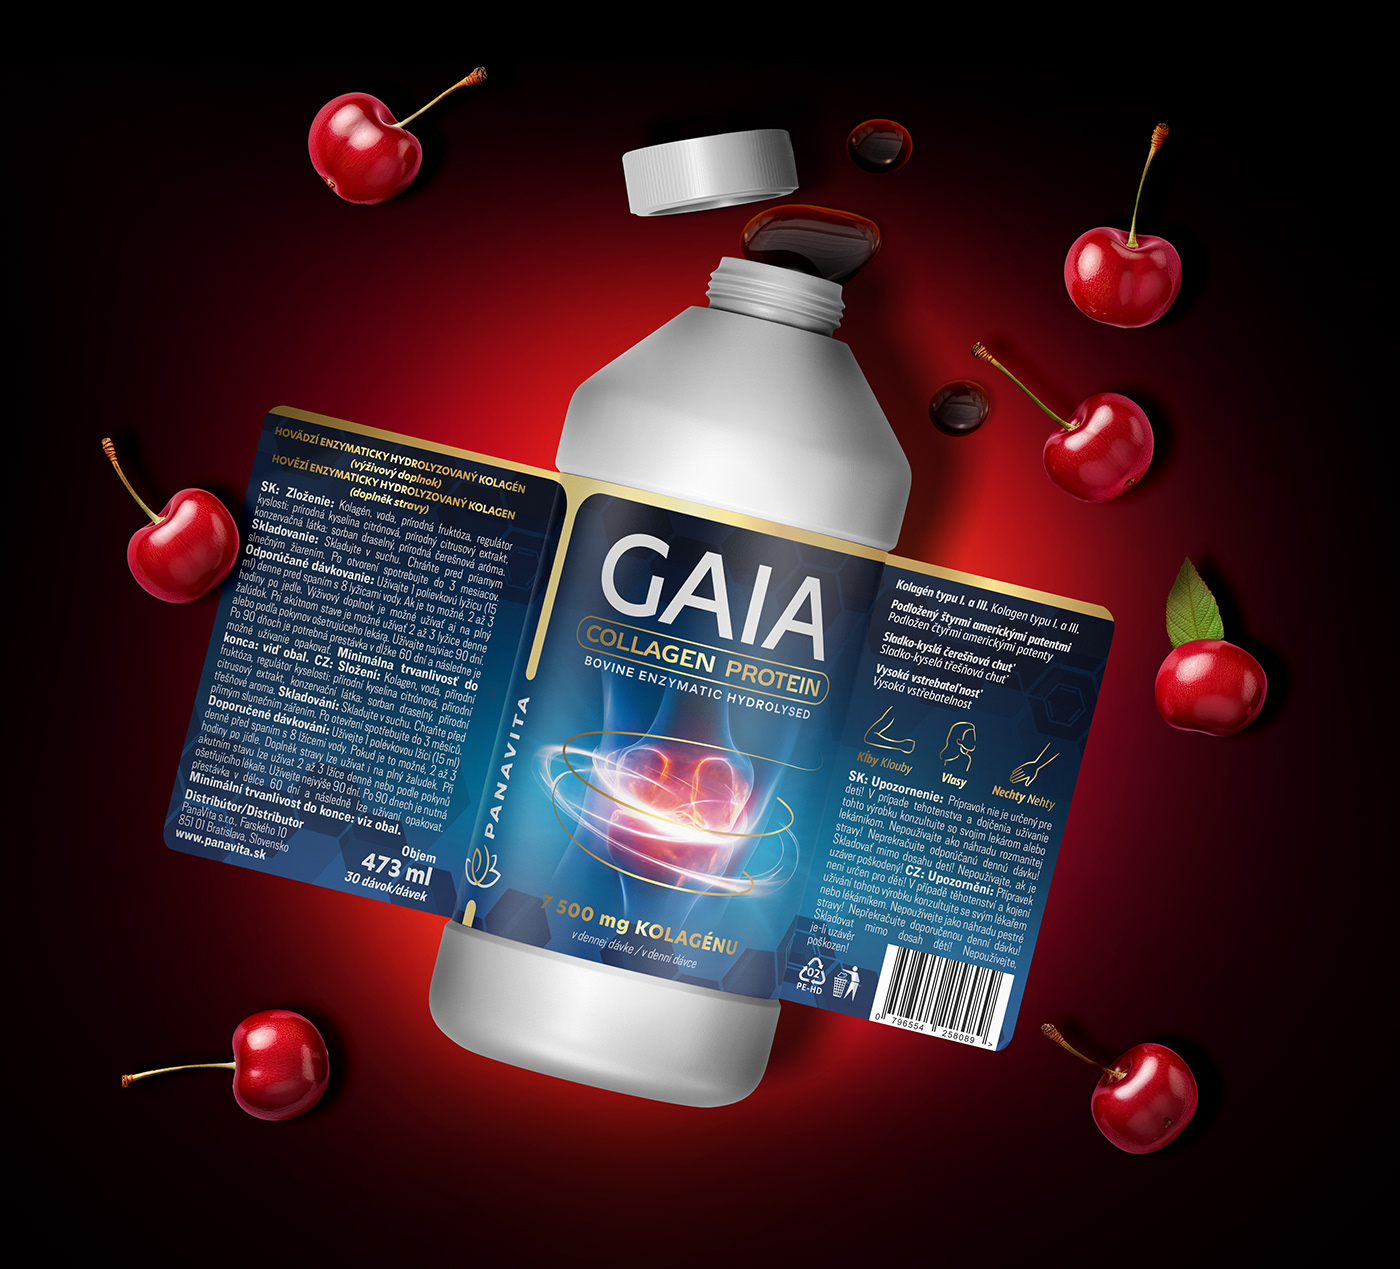 collagen packaging design cherry